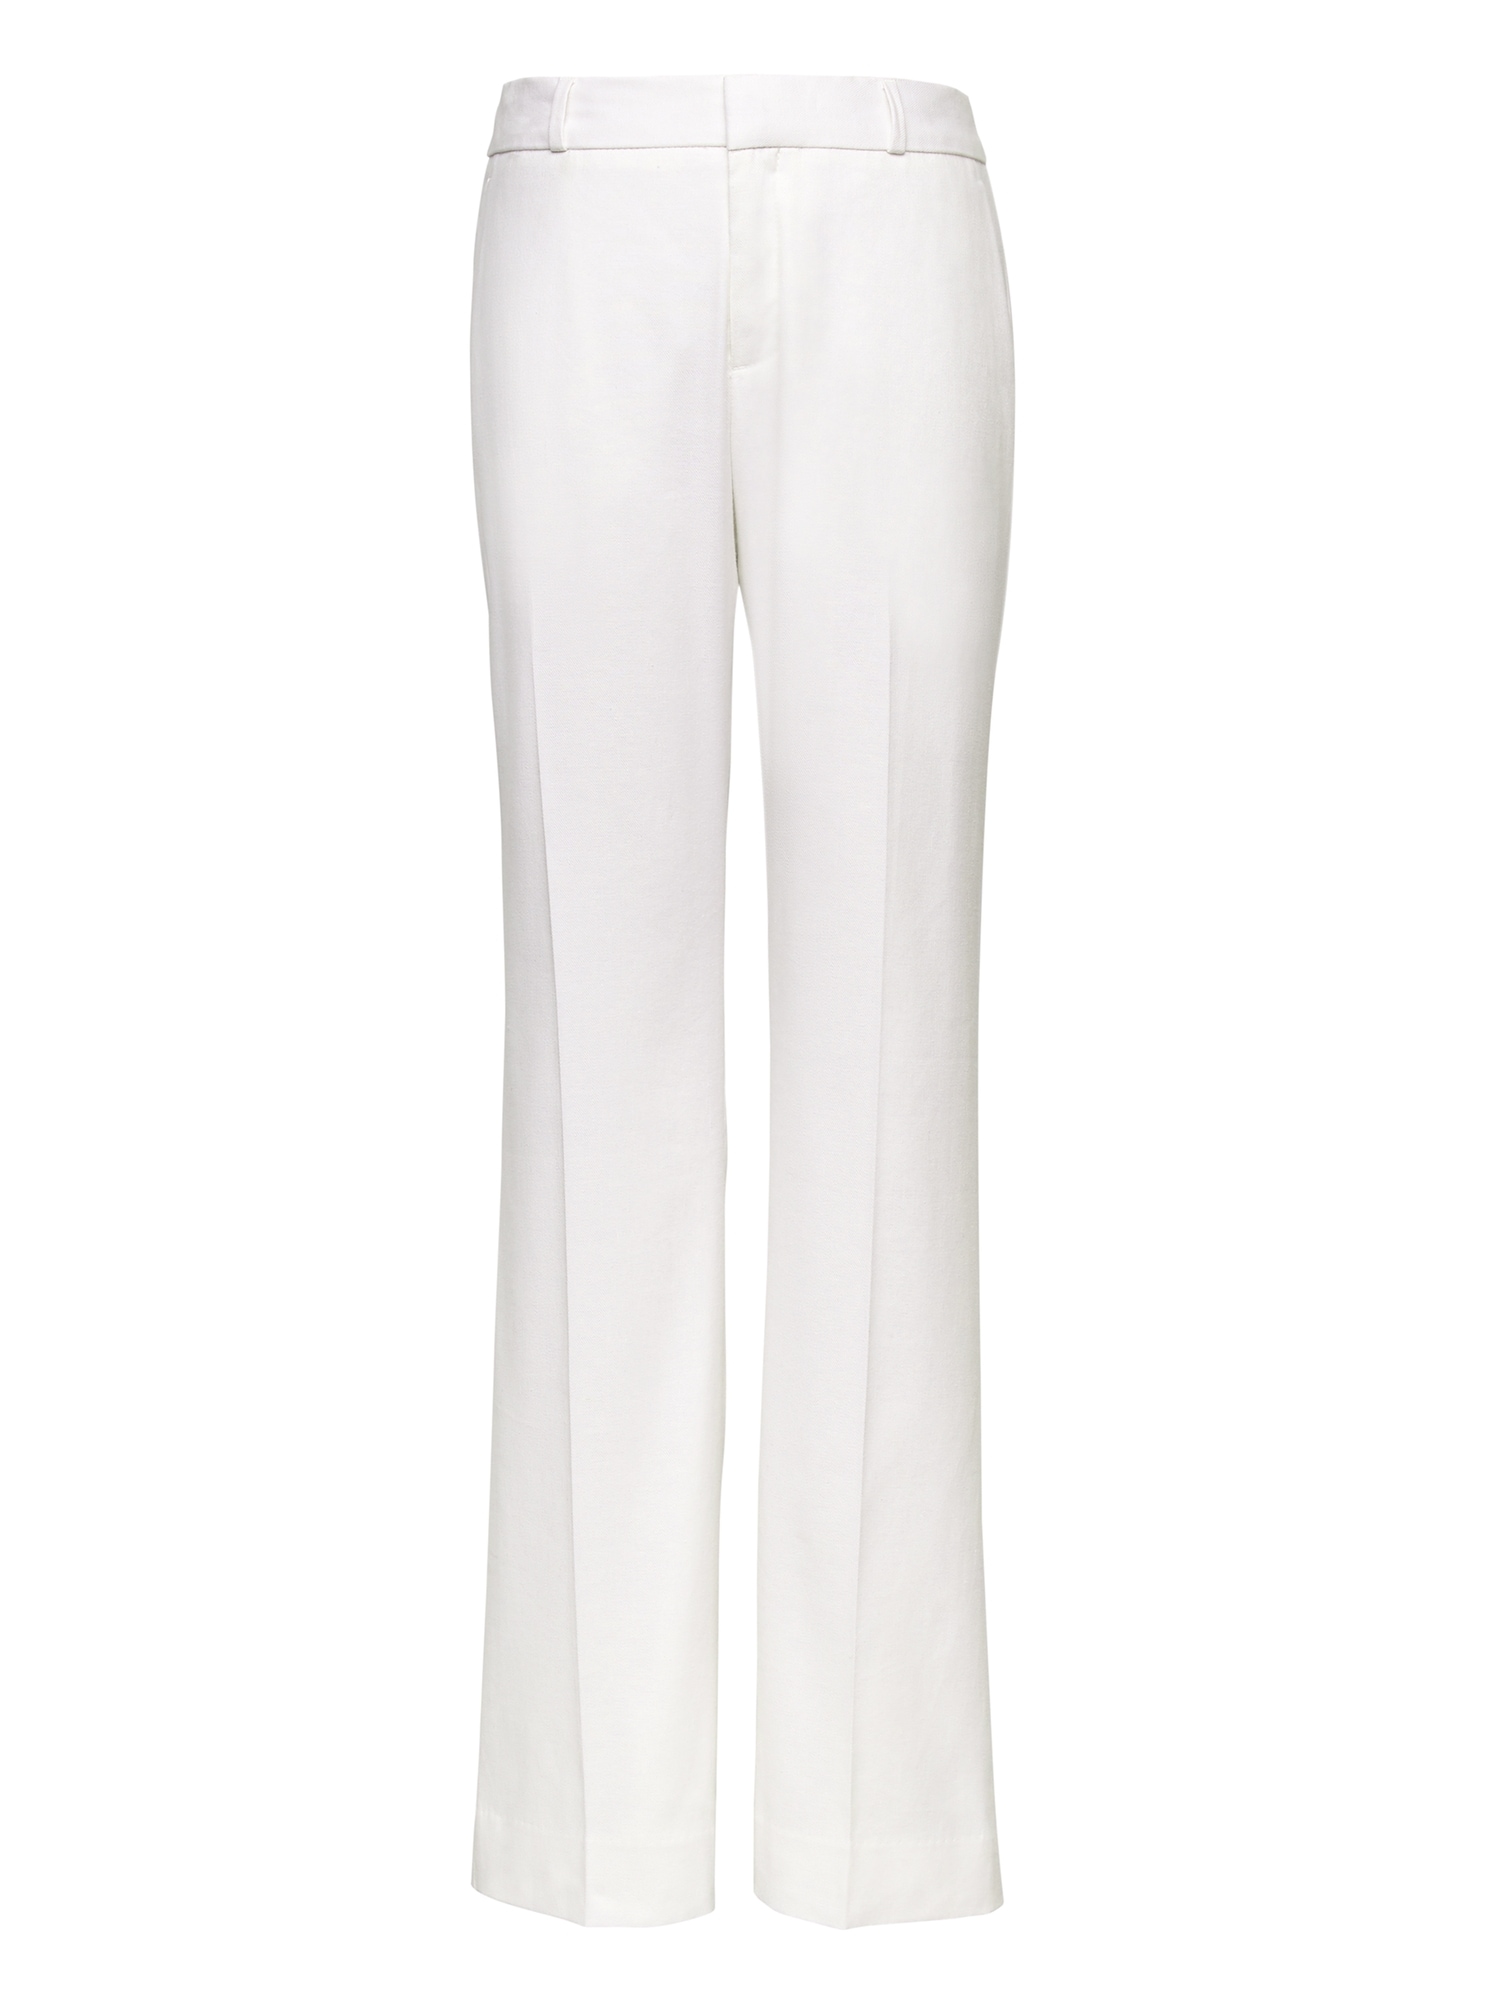 Logan Trouser-Fit Stretch Linen-Cotton Pant